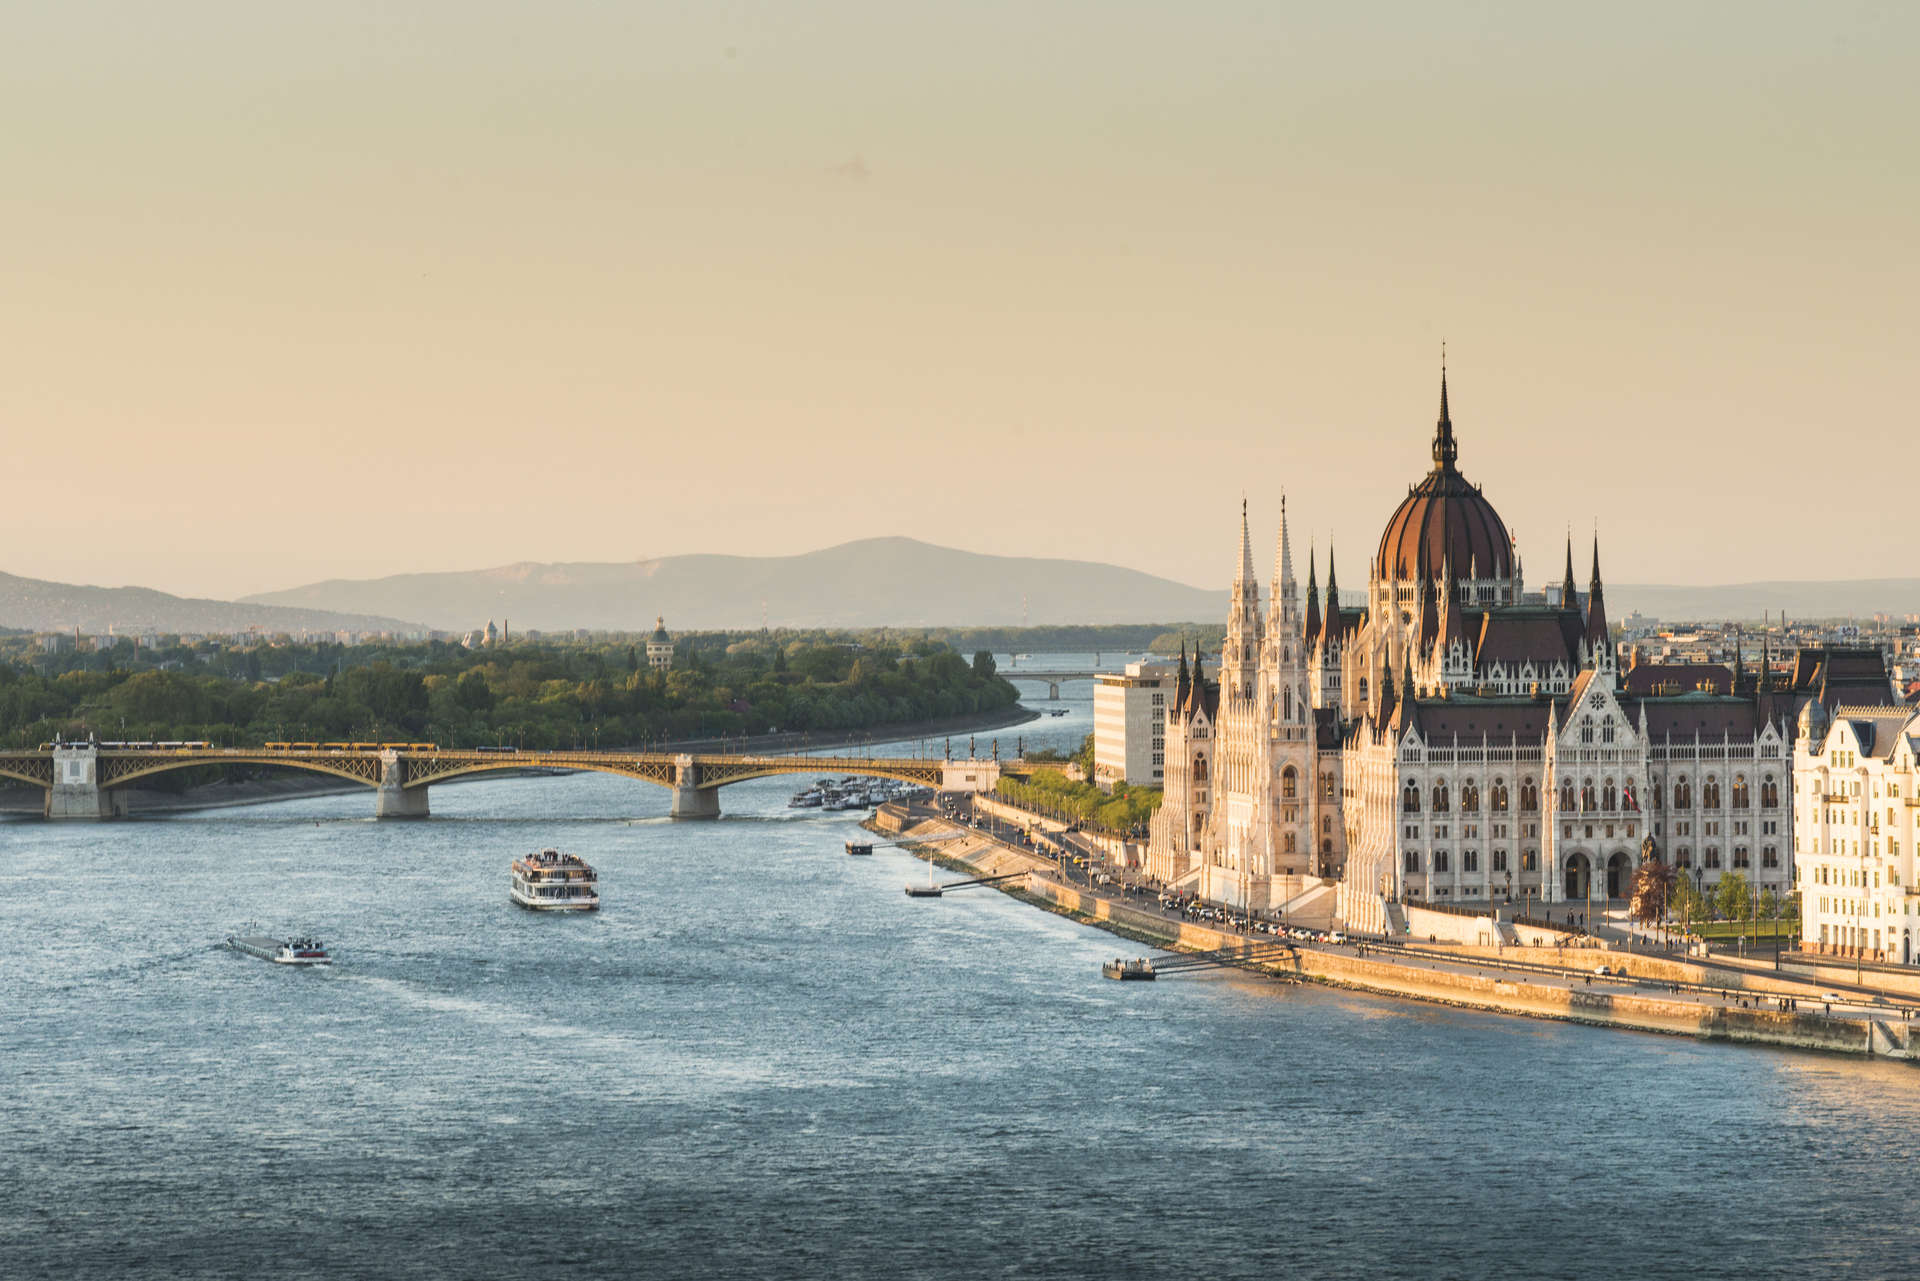 تمنحك بودابست تجربة مدينتين في مدينة واحدة؛ مدينة بودا الأقدم والمبنية أعلى التلال، والأخرى الأحدث والأكثر مرحًا على الجانب الآخر من نهر الدانوب